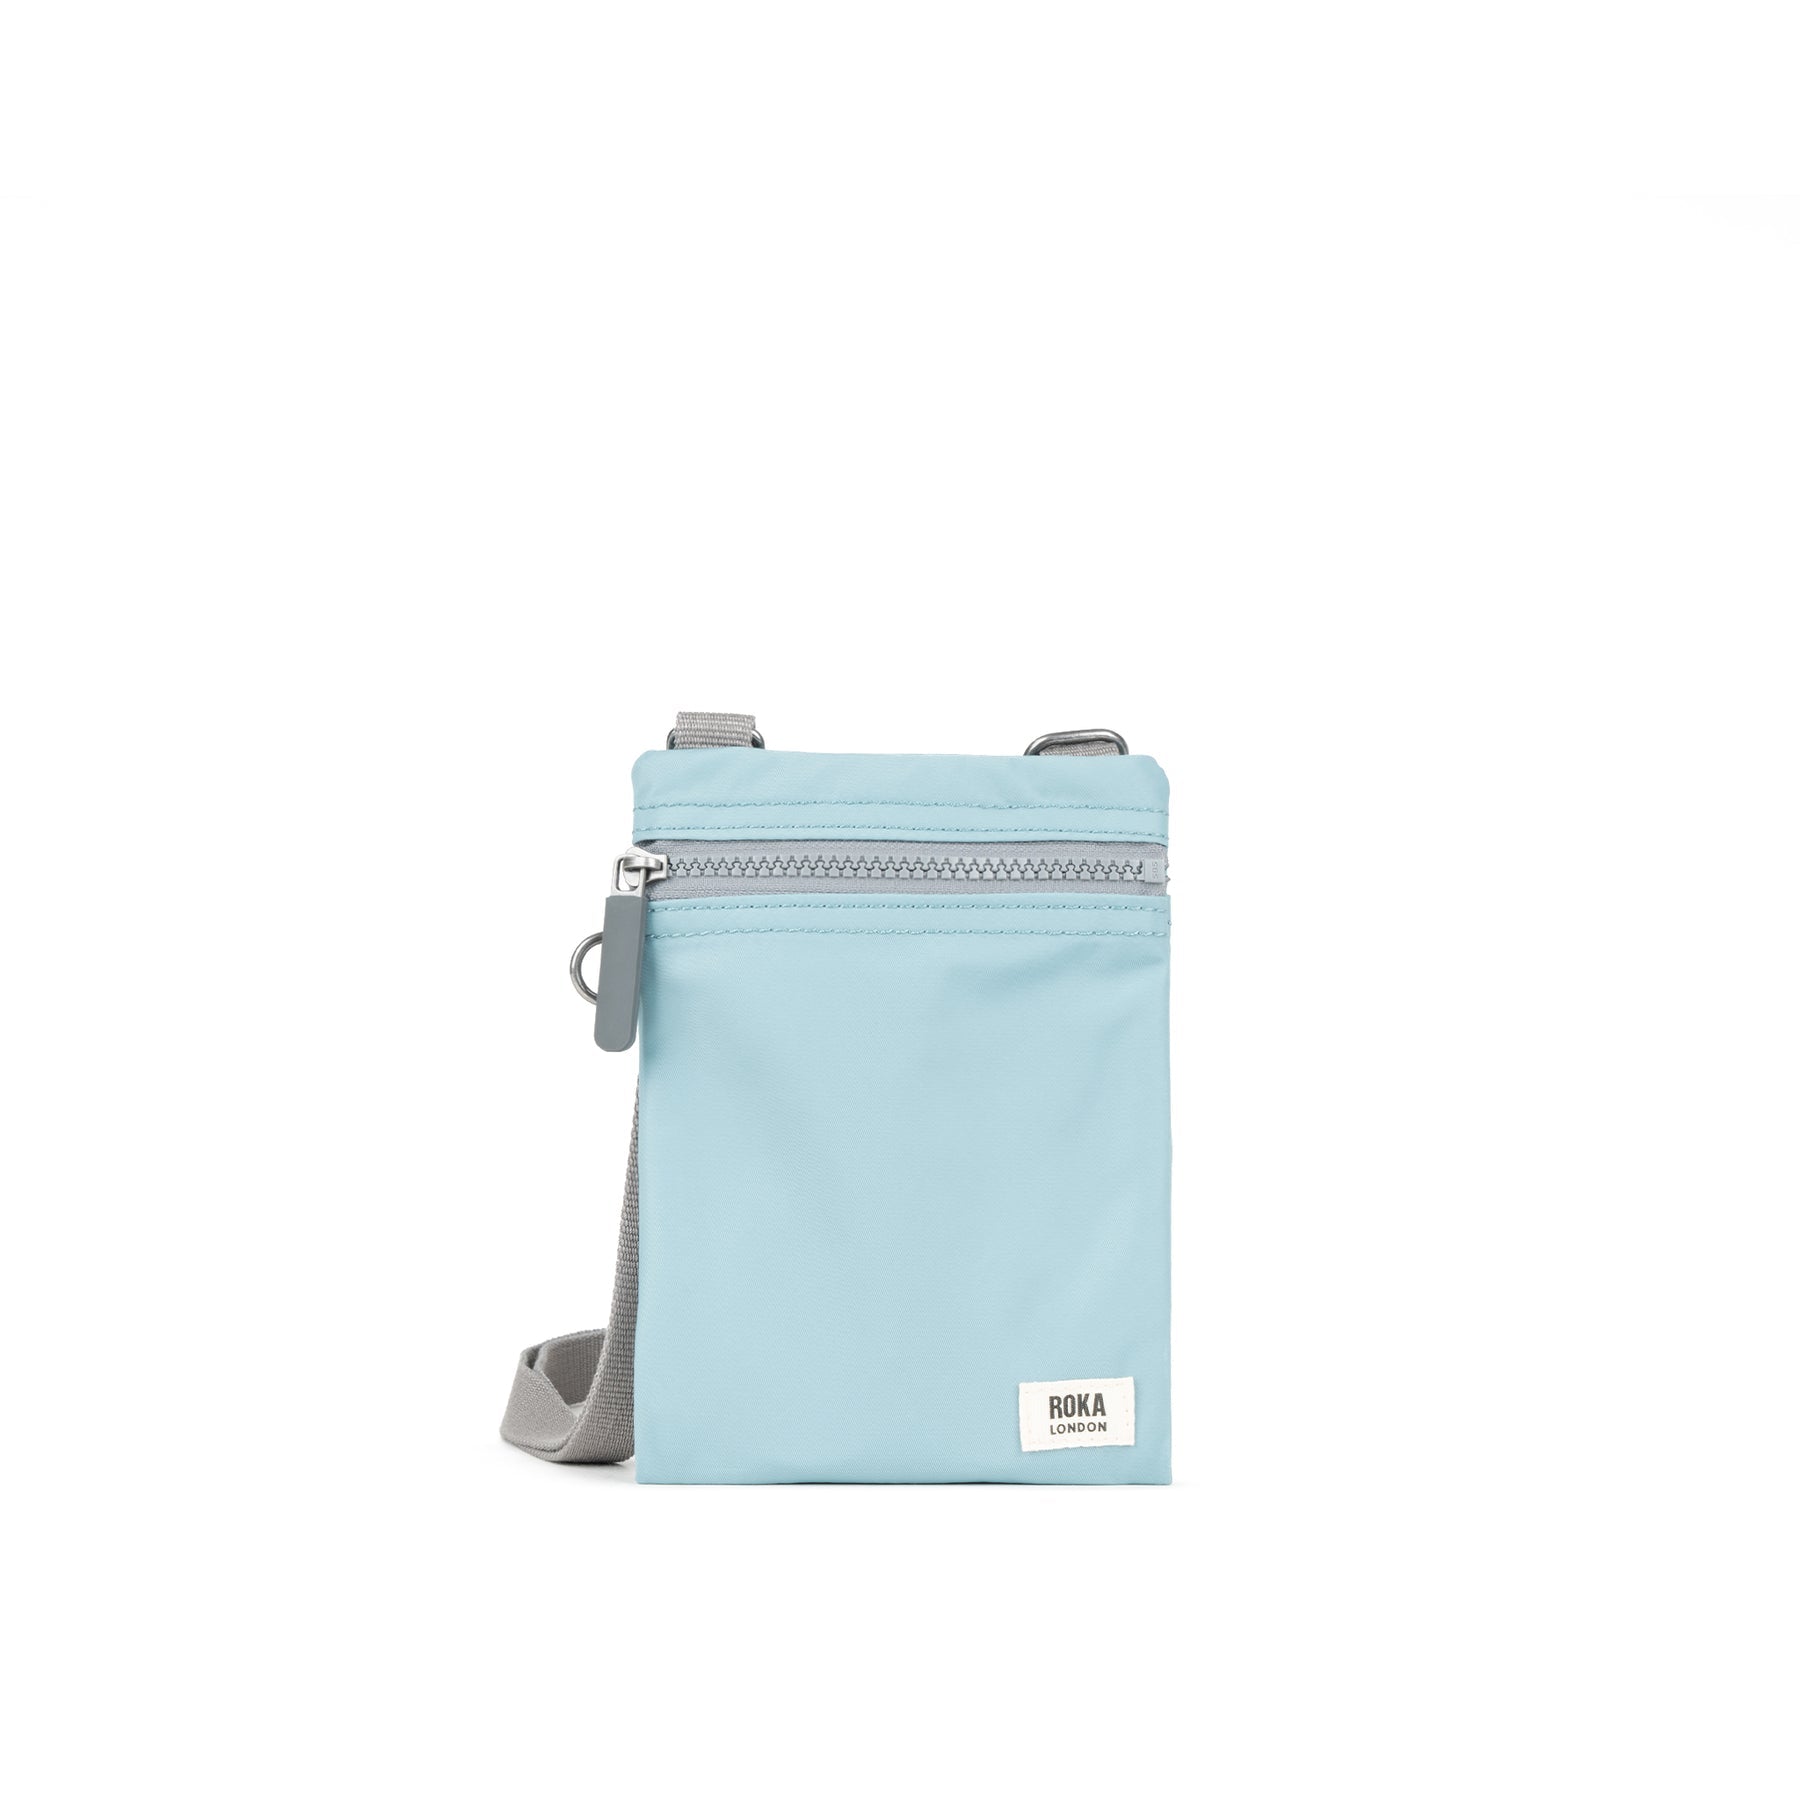 roka chelsea waterproof sling bag 